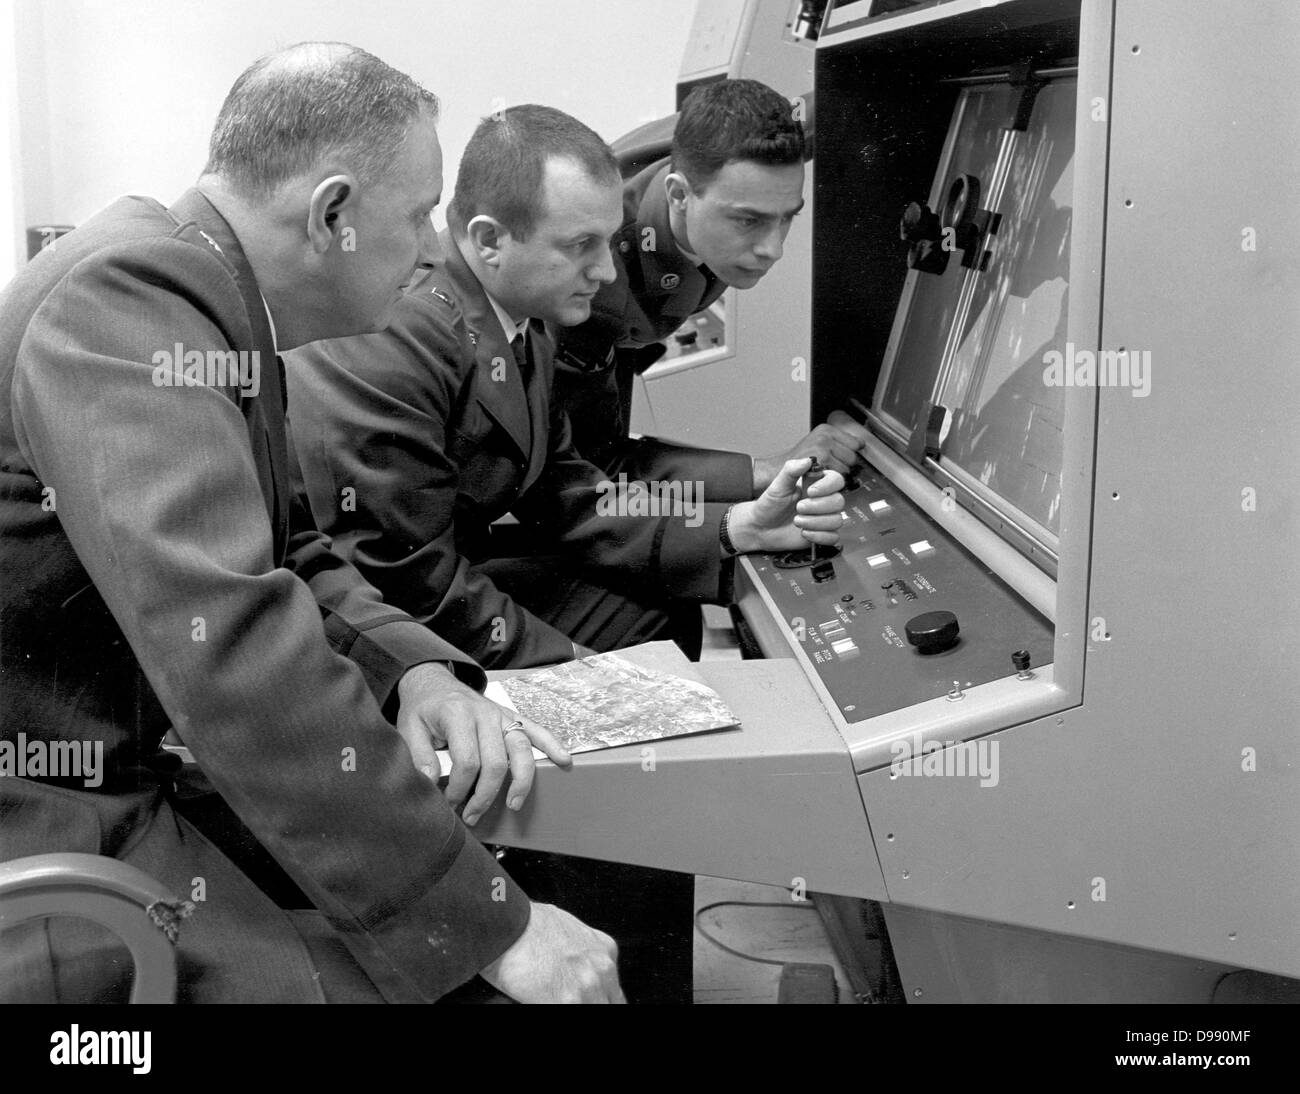 Crisi dei missili di Cuba.1960 -- Strategic Air Command personale interpretazione di foto di ricognizione durante la crisi dei missili cubani, 1962. (U.S. Air Force Foto Stock